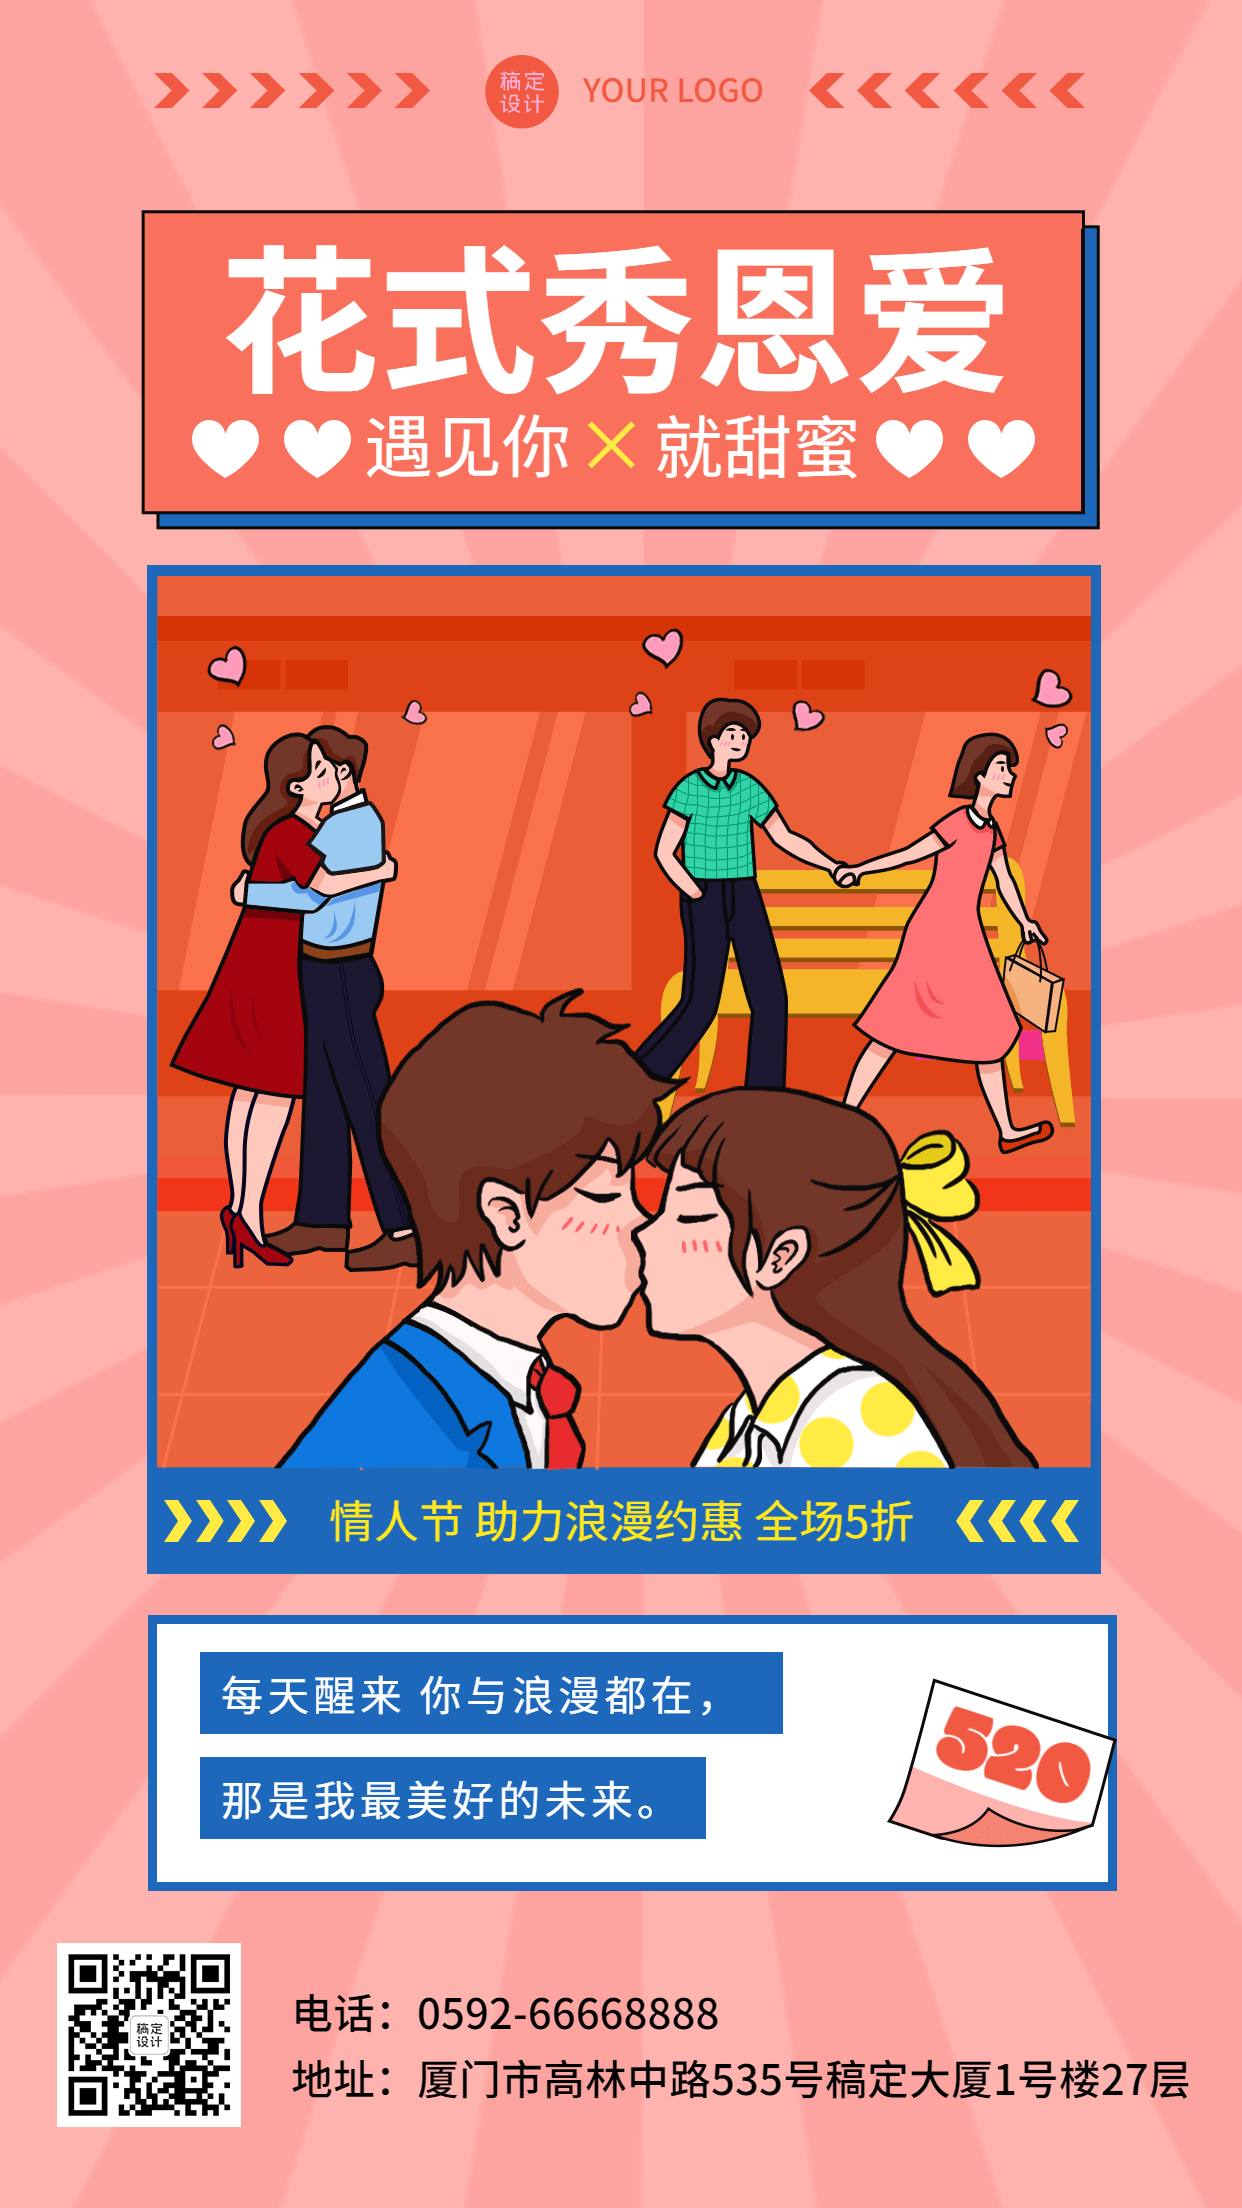 520情人节节日营销折扣活动插画手机海报预览效果